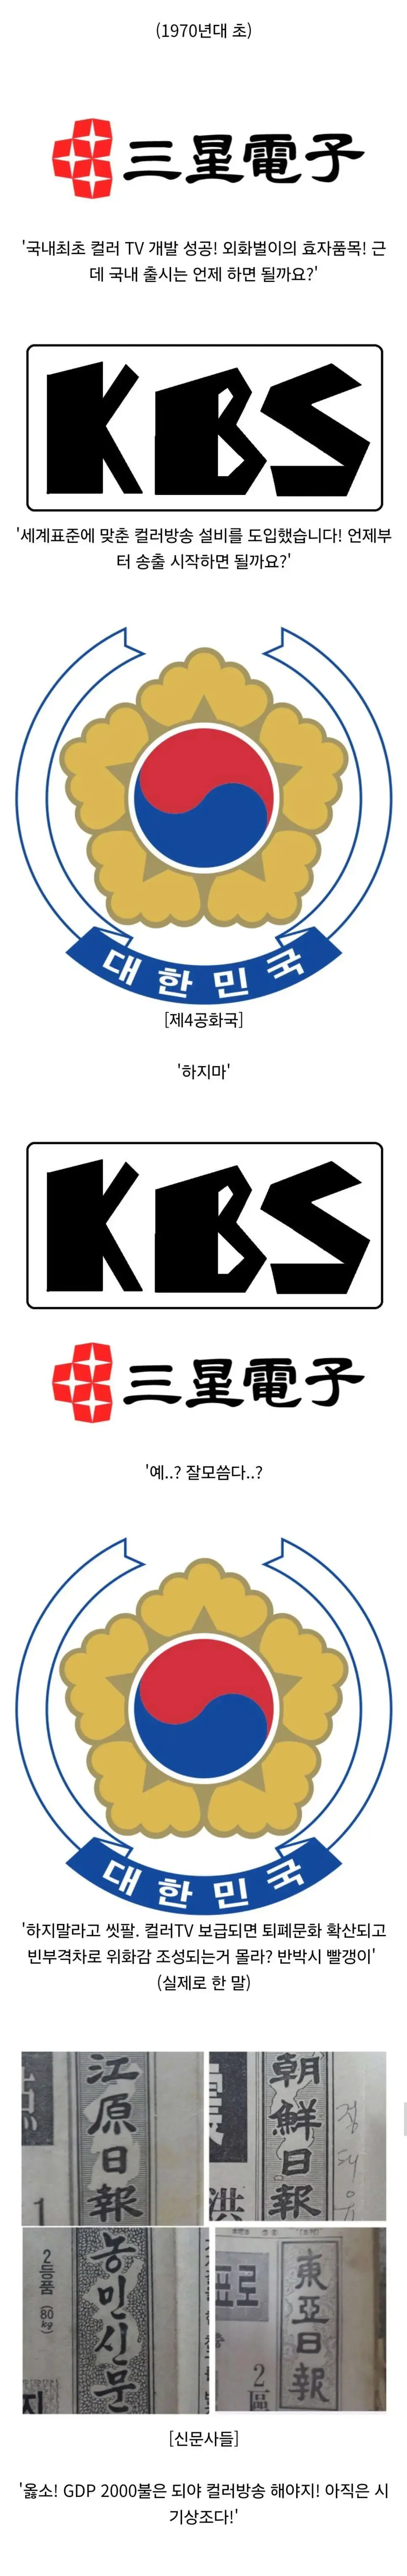 한국에 컬러TV가 보급되기 시작한 경위 ㄷㄷ | mbong.kr 엠봉